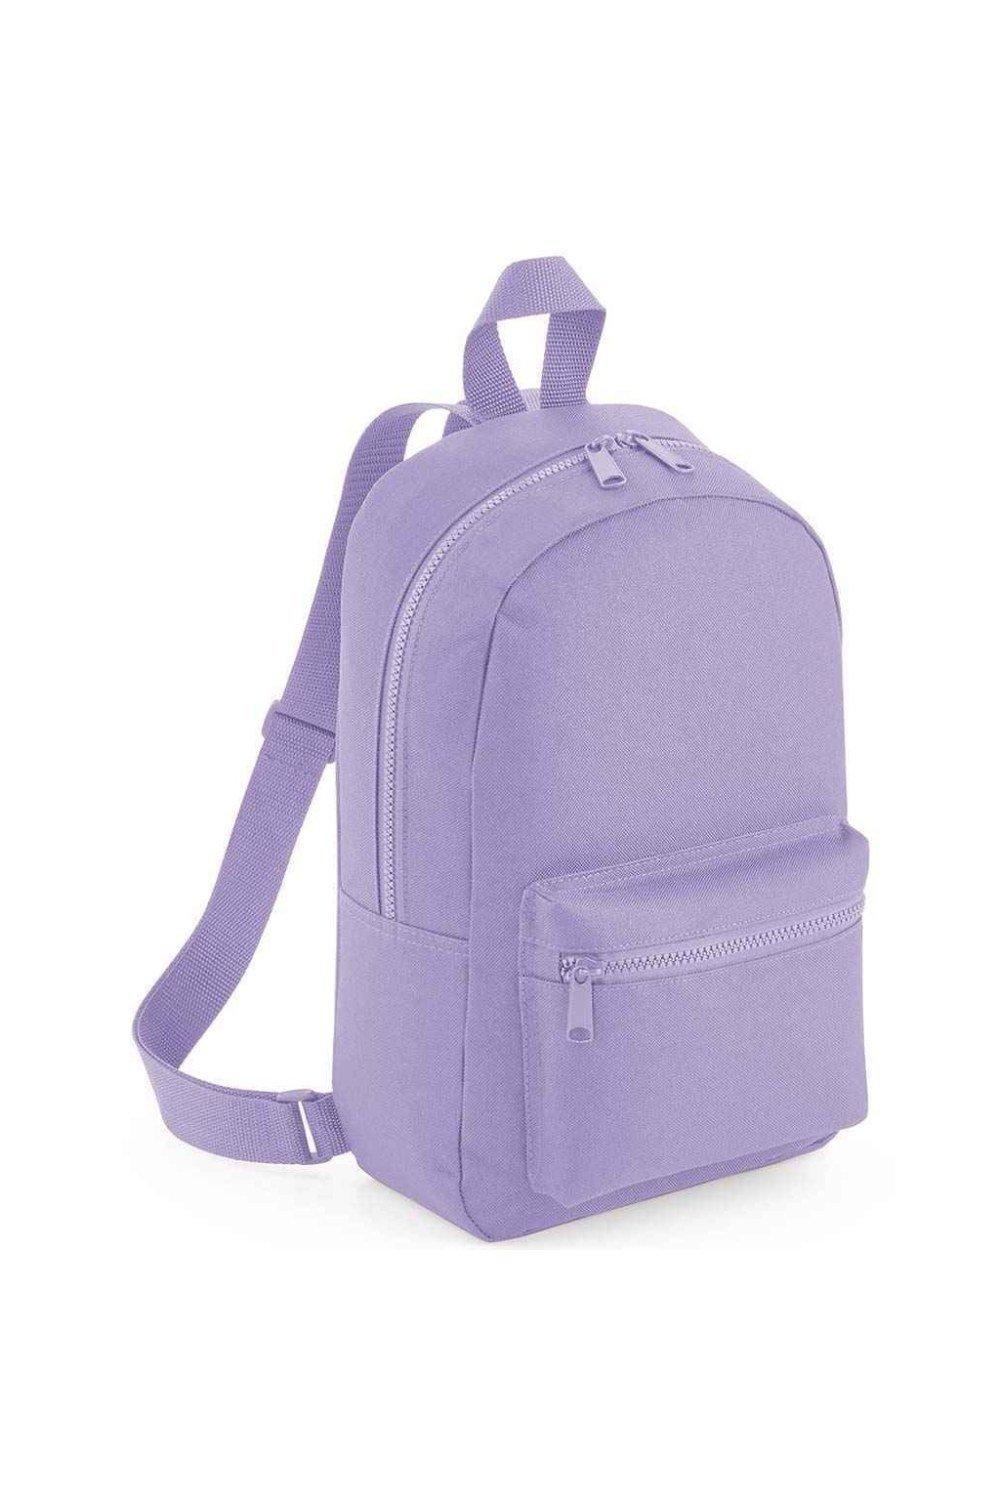 Мини-рюкзак Essential Fashion Bagbase, фиолетовый чехол mypads genesis дженезис 1 мужской для umidigi bison 1 задняя панель накладка бампер